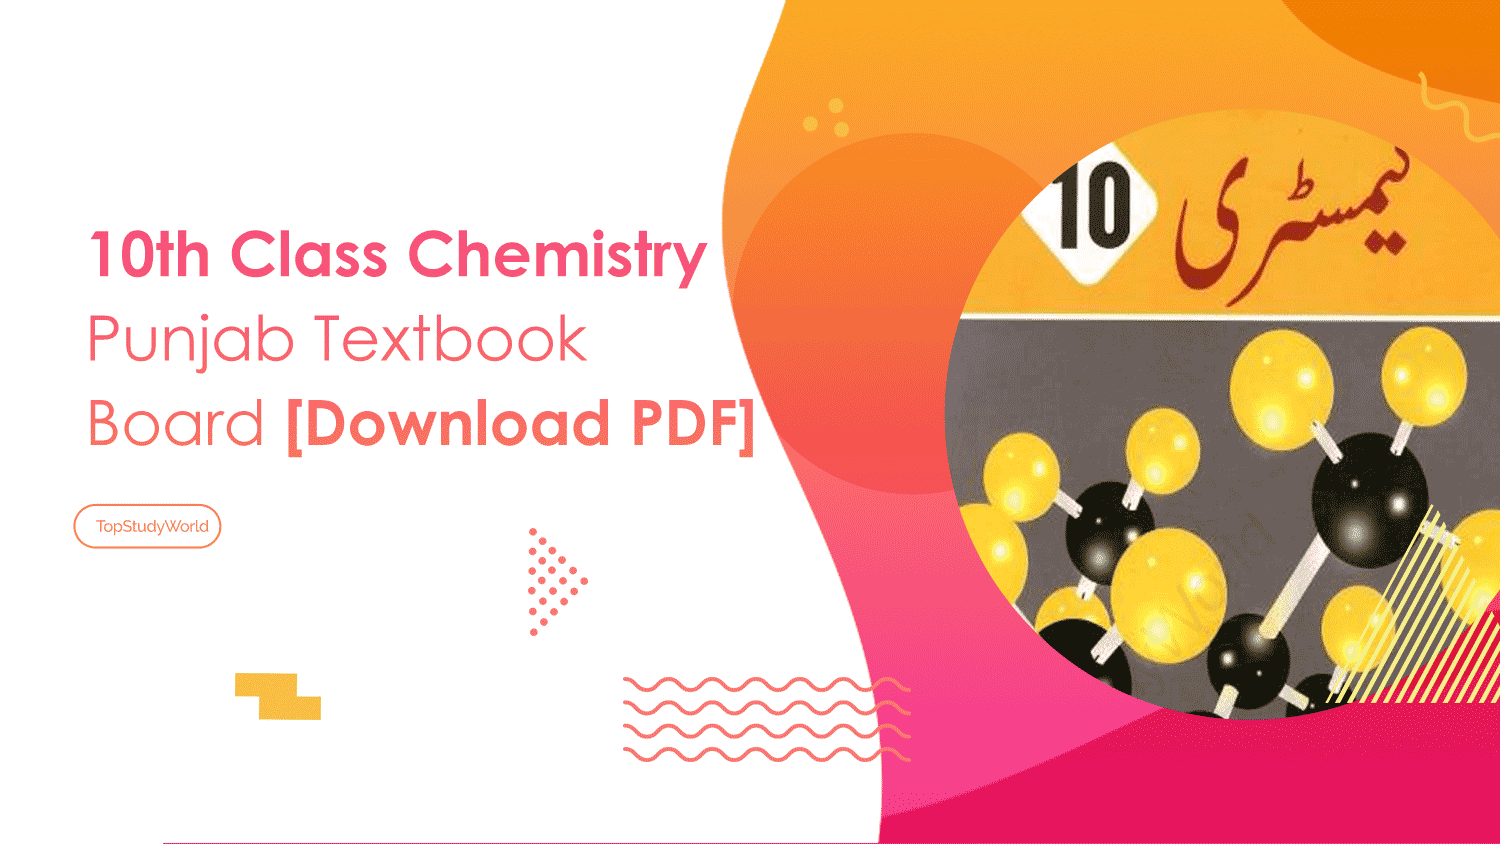 10th Class Chemistry (Urdu) Punjab Textbook Board [Download PDF]